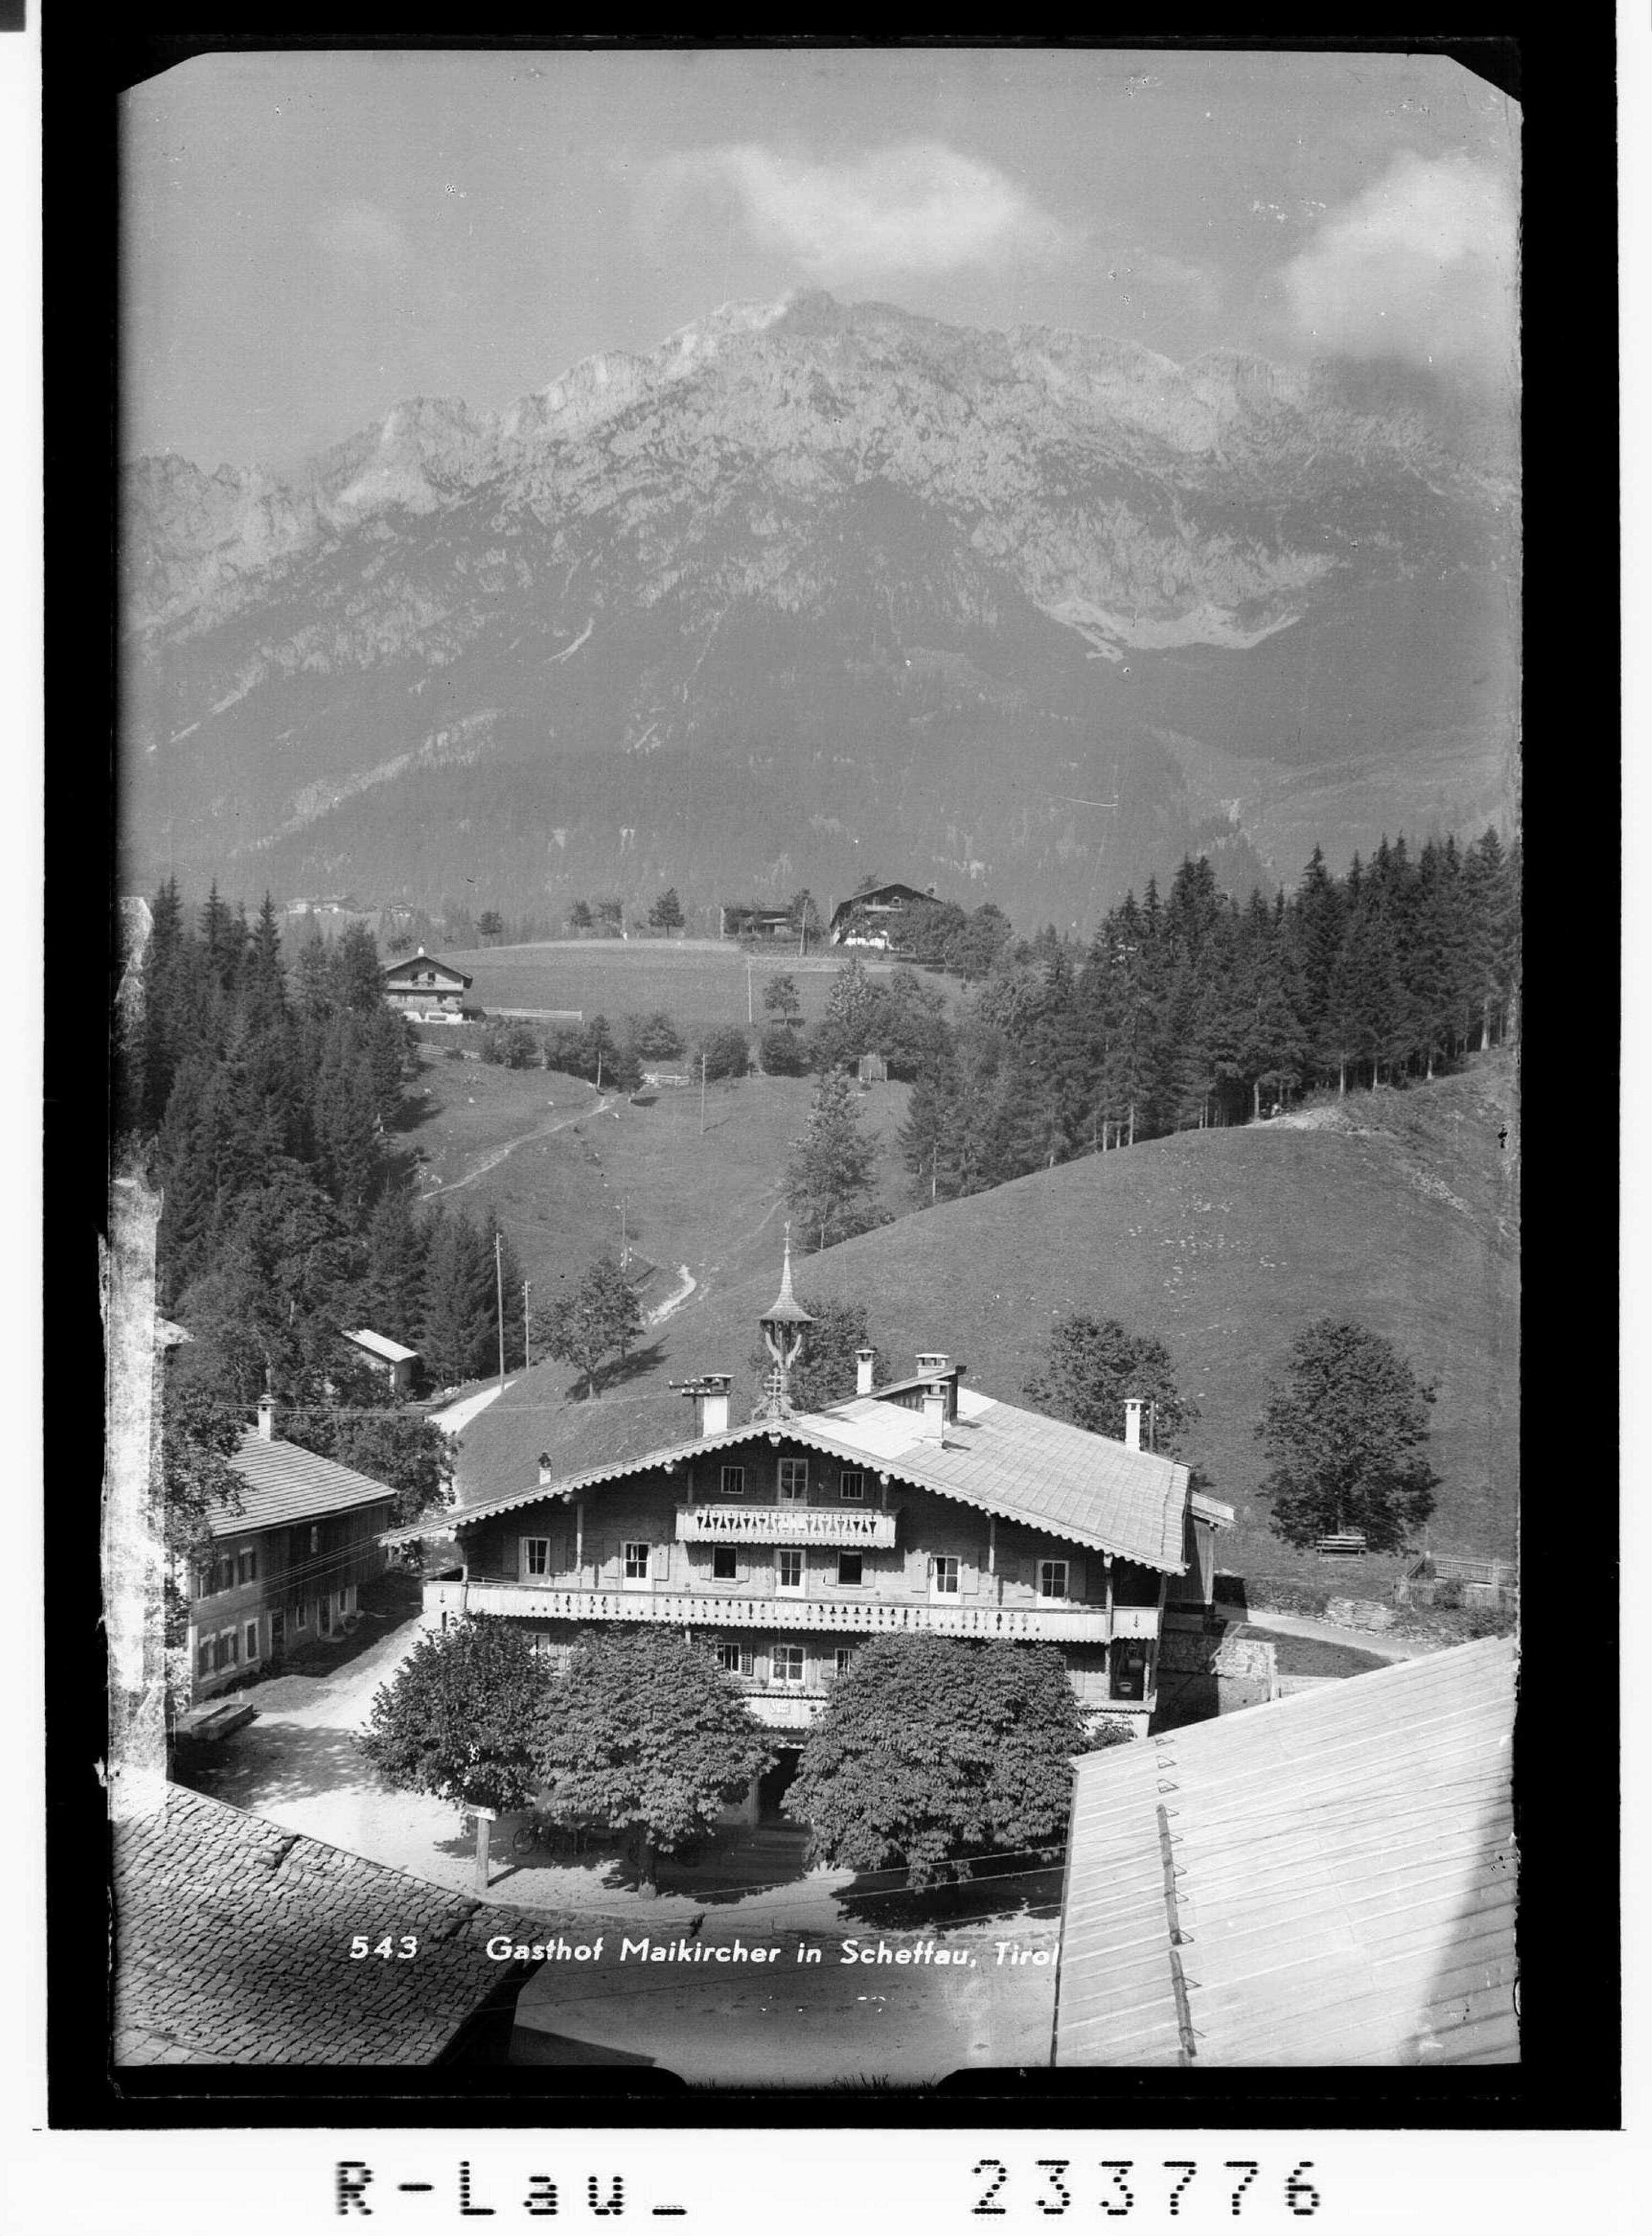 Gasthof Maikirchner in Scheffau, Tirol></div>


    <hr>
    <div class=